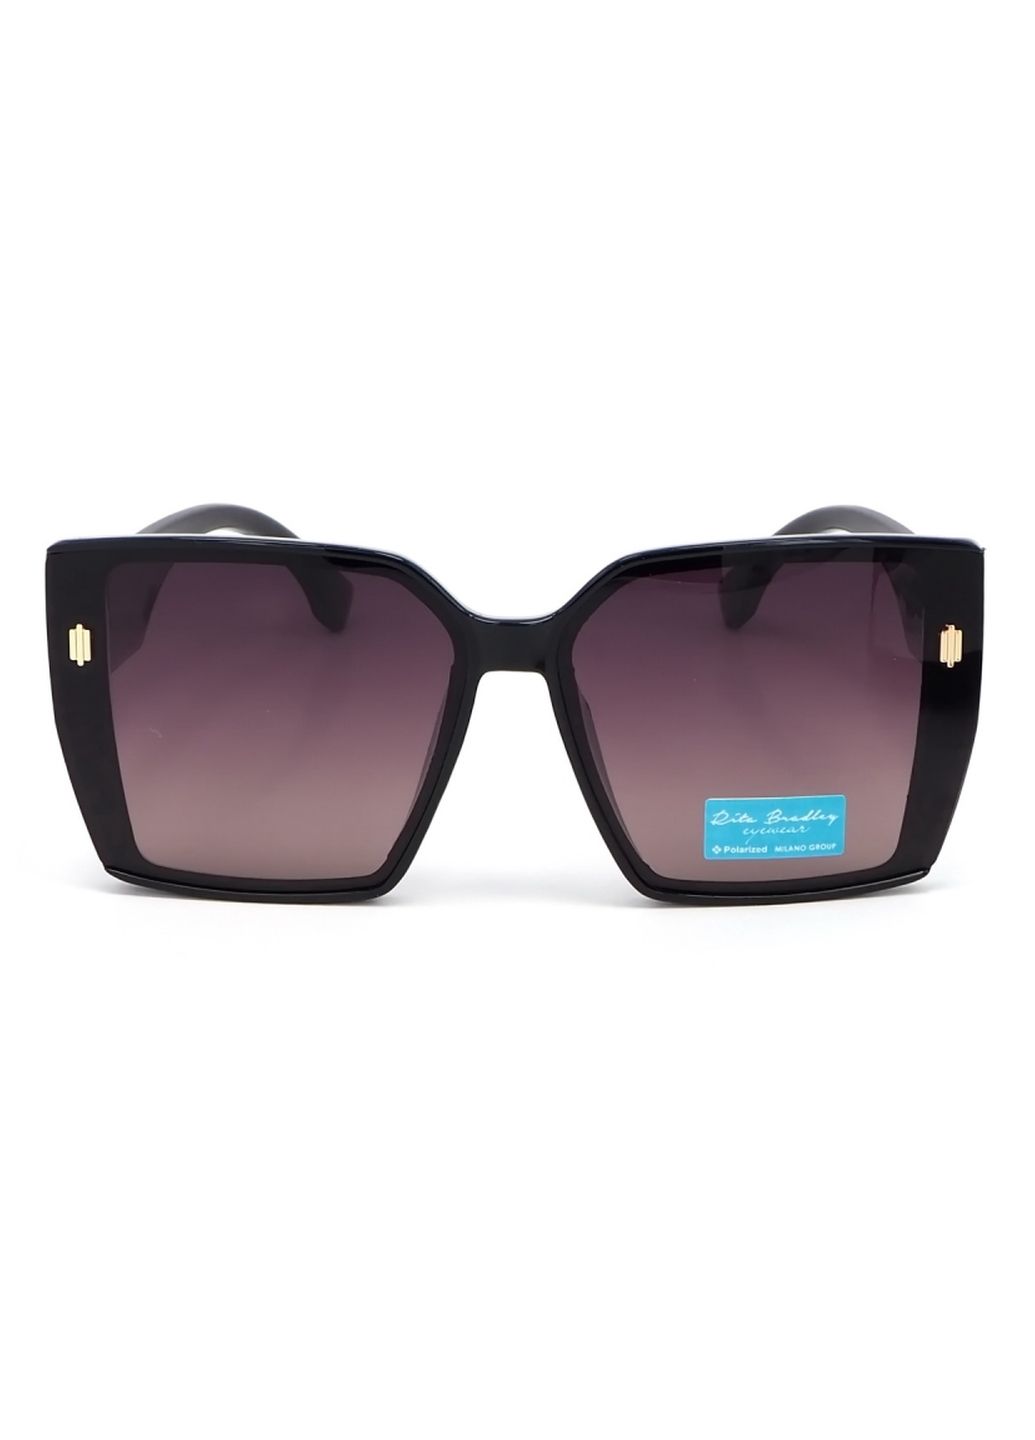 Купить Женские солнцезащитные очки Rita Bradley с поляризацией RB727 112058 в интернет-магазине